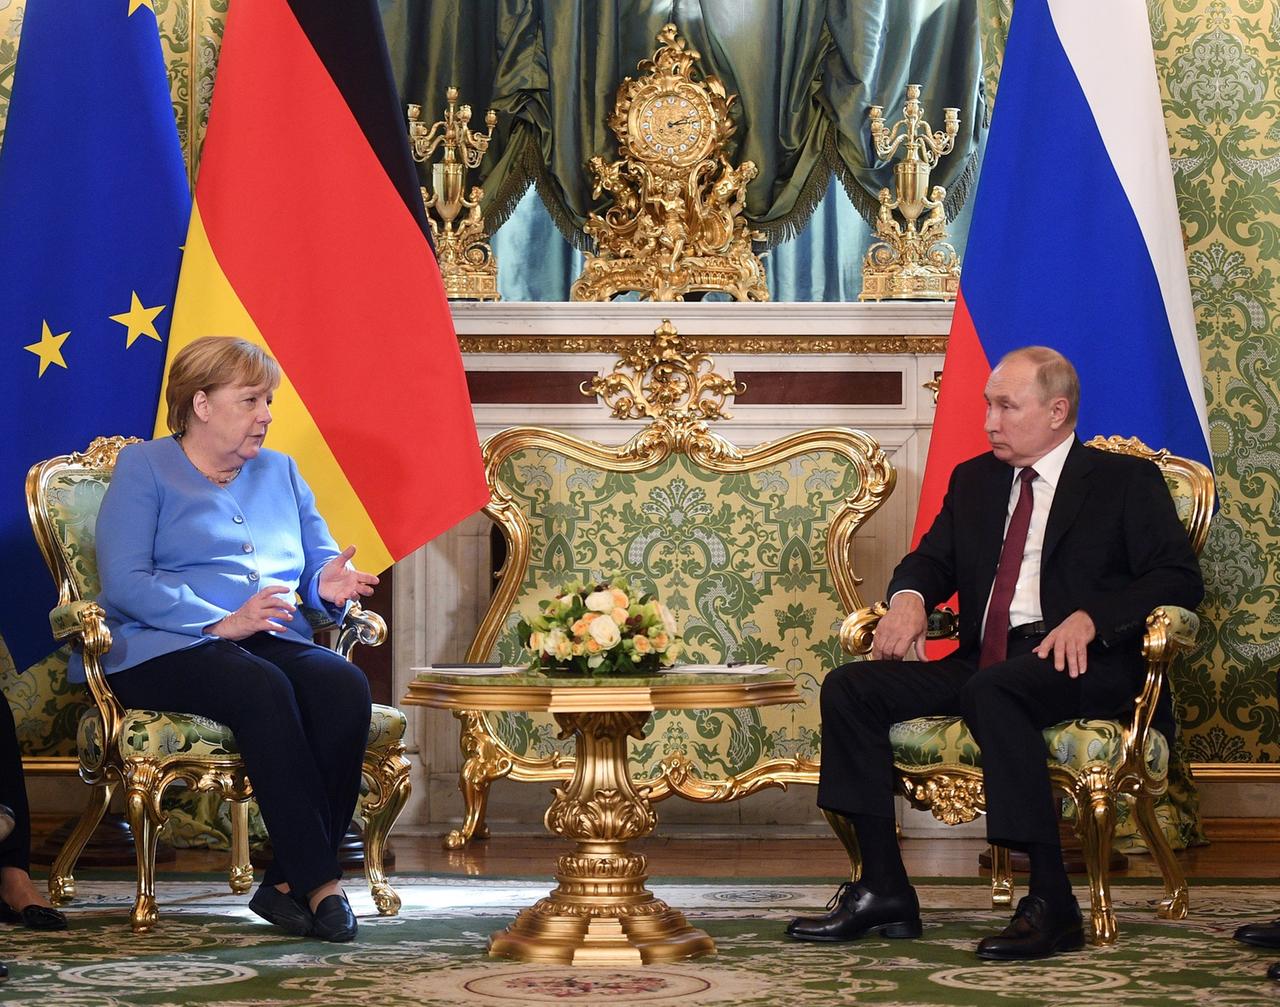 Angela Merkel und Wladimir Putin sitzen einander gegenüber auf Sesseln mit goldenen Ornamenten, hinter ihnen die Flaggen der EU, Deutschlands und Russlands.